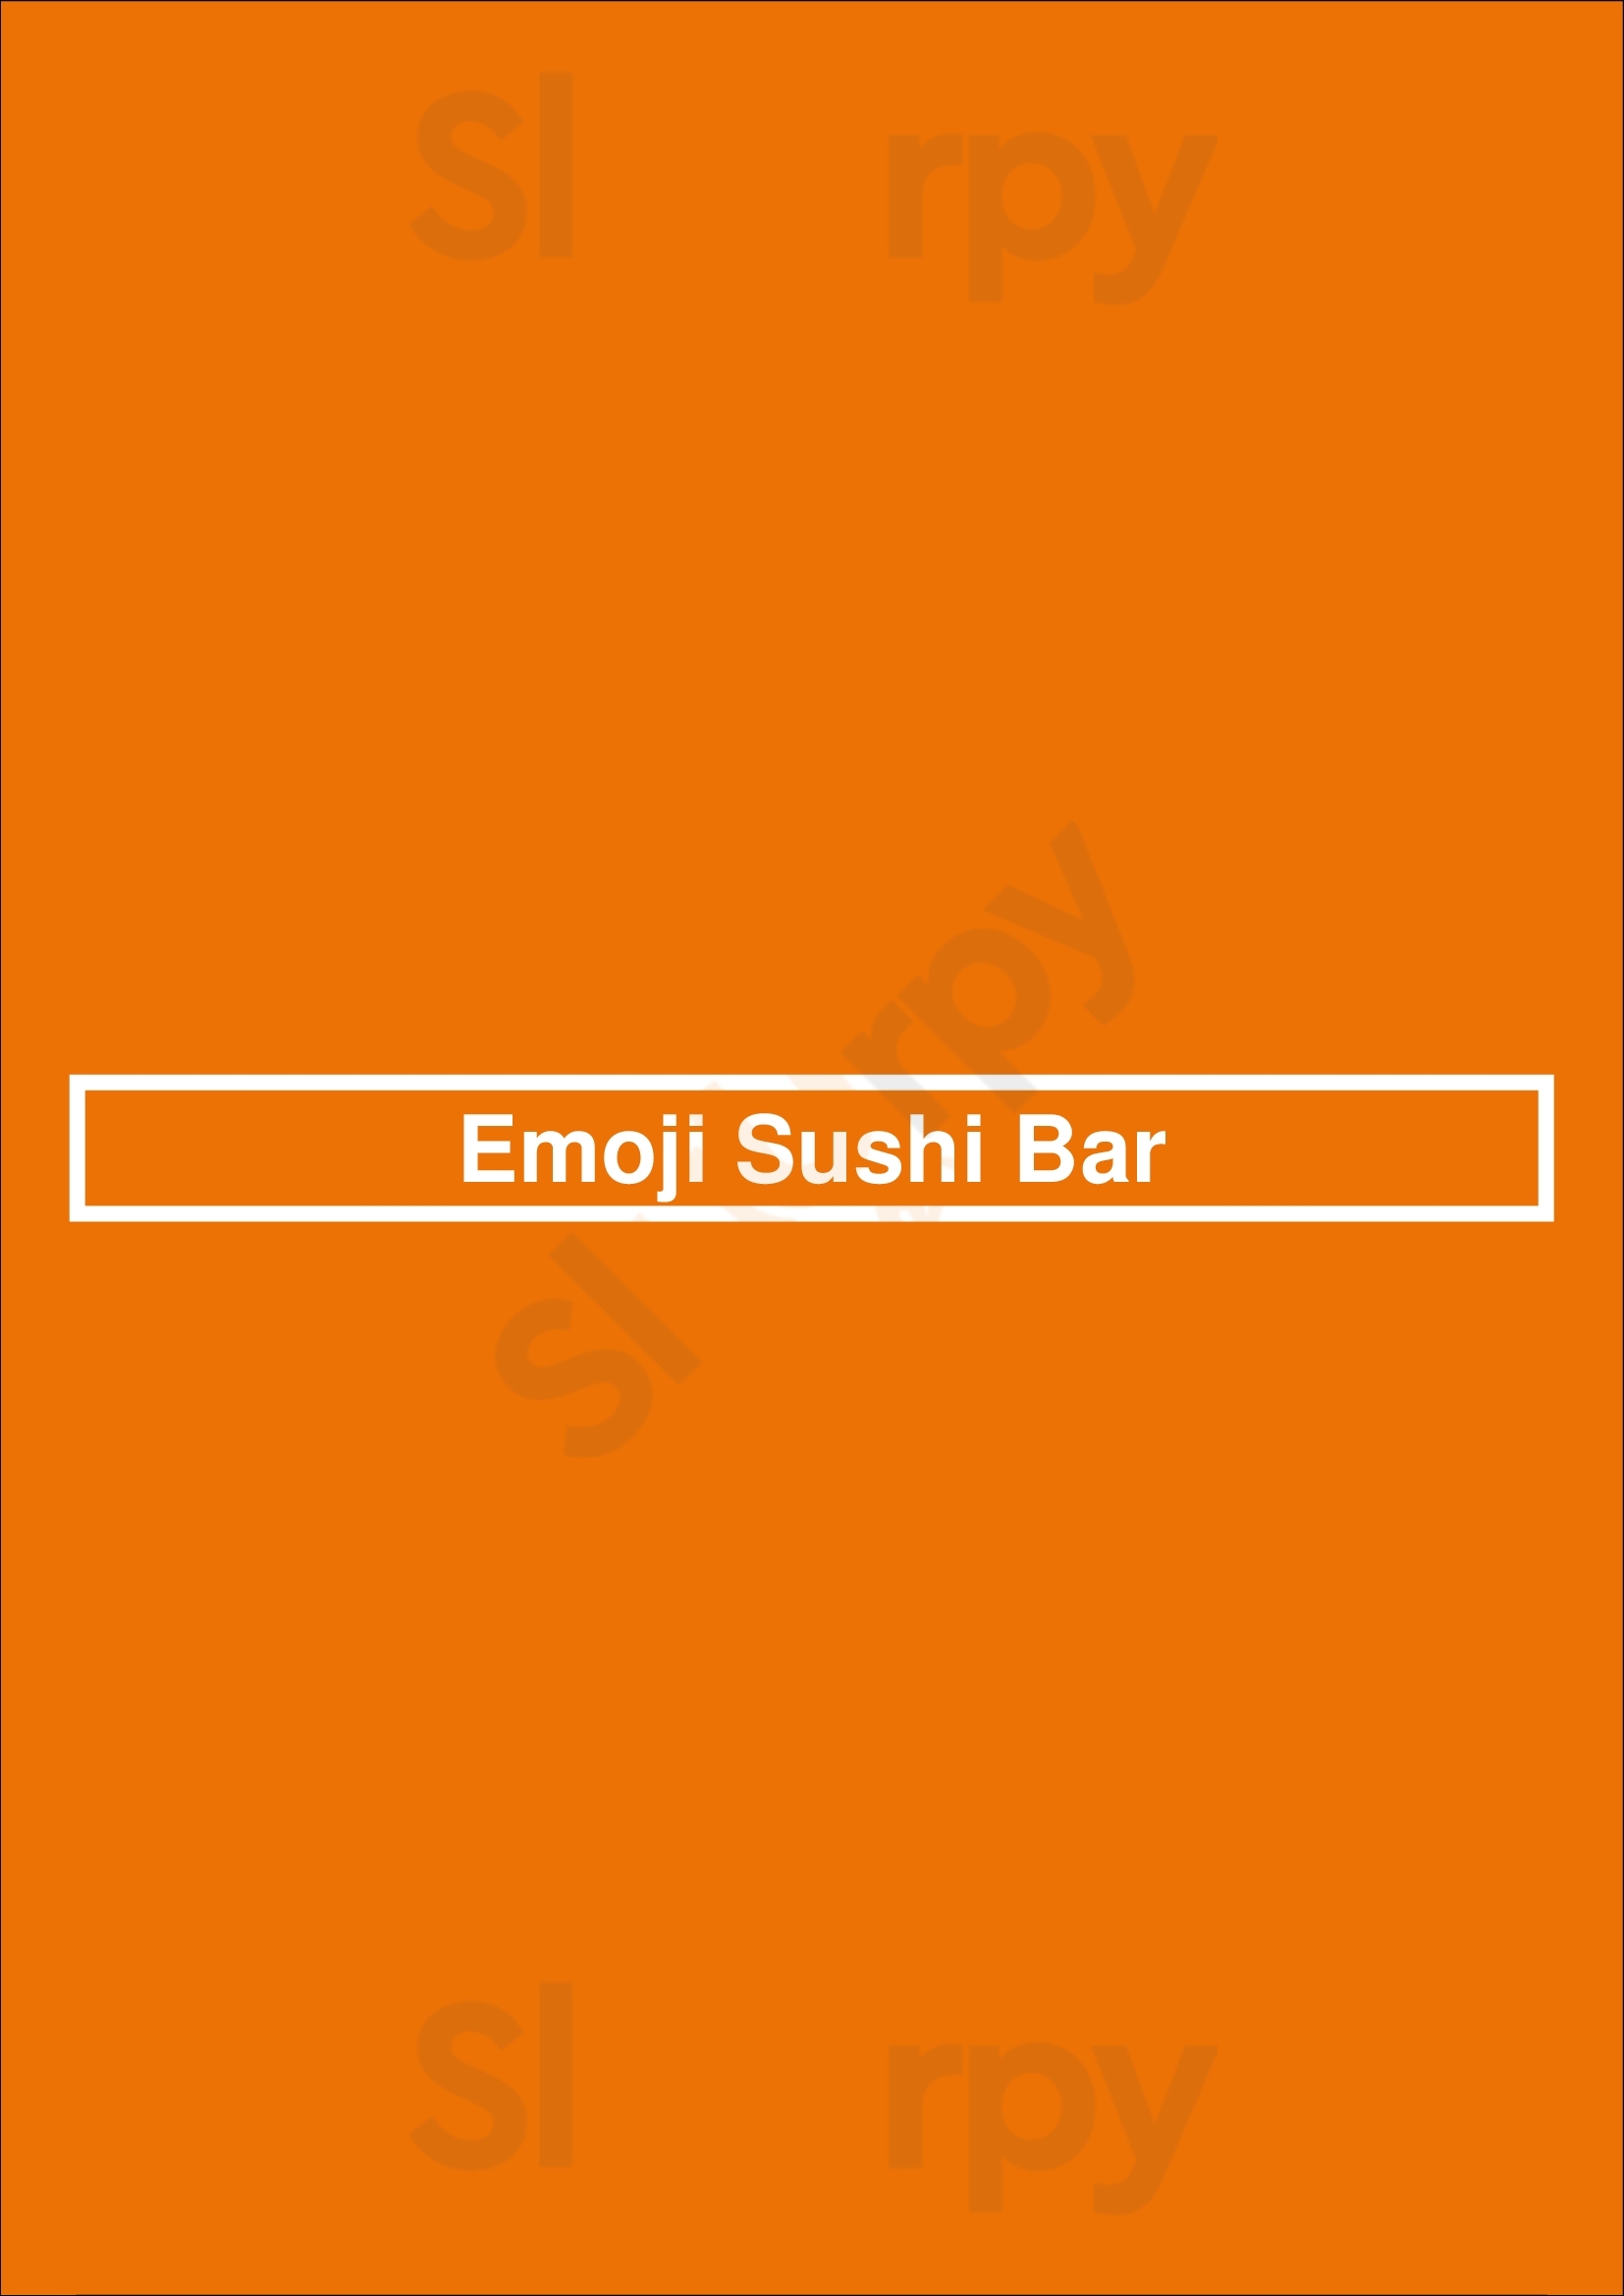 Emoji Sushi Bar Rio Tinto Menu - 1